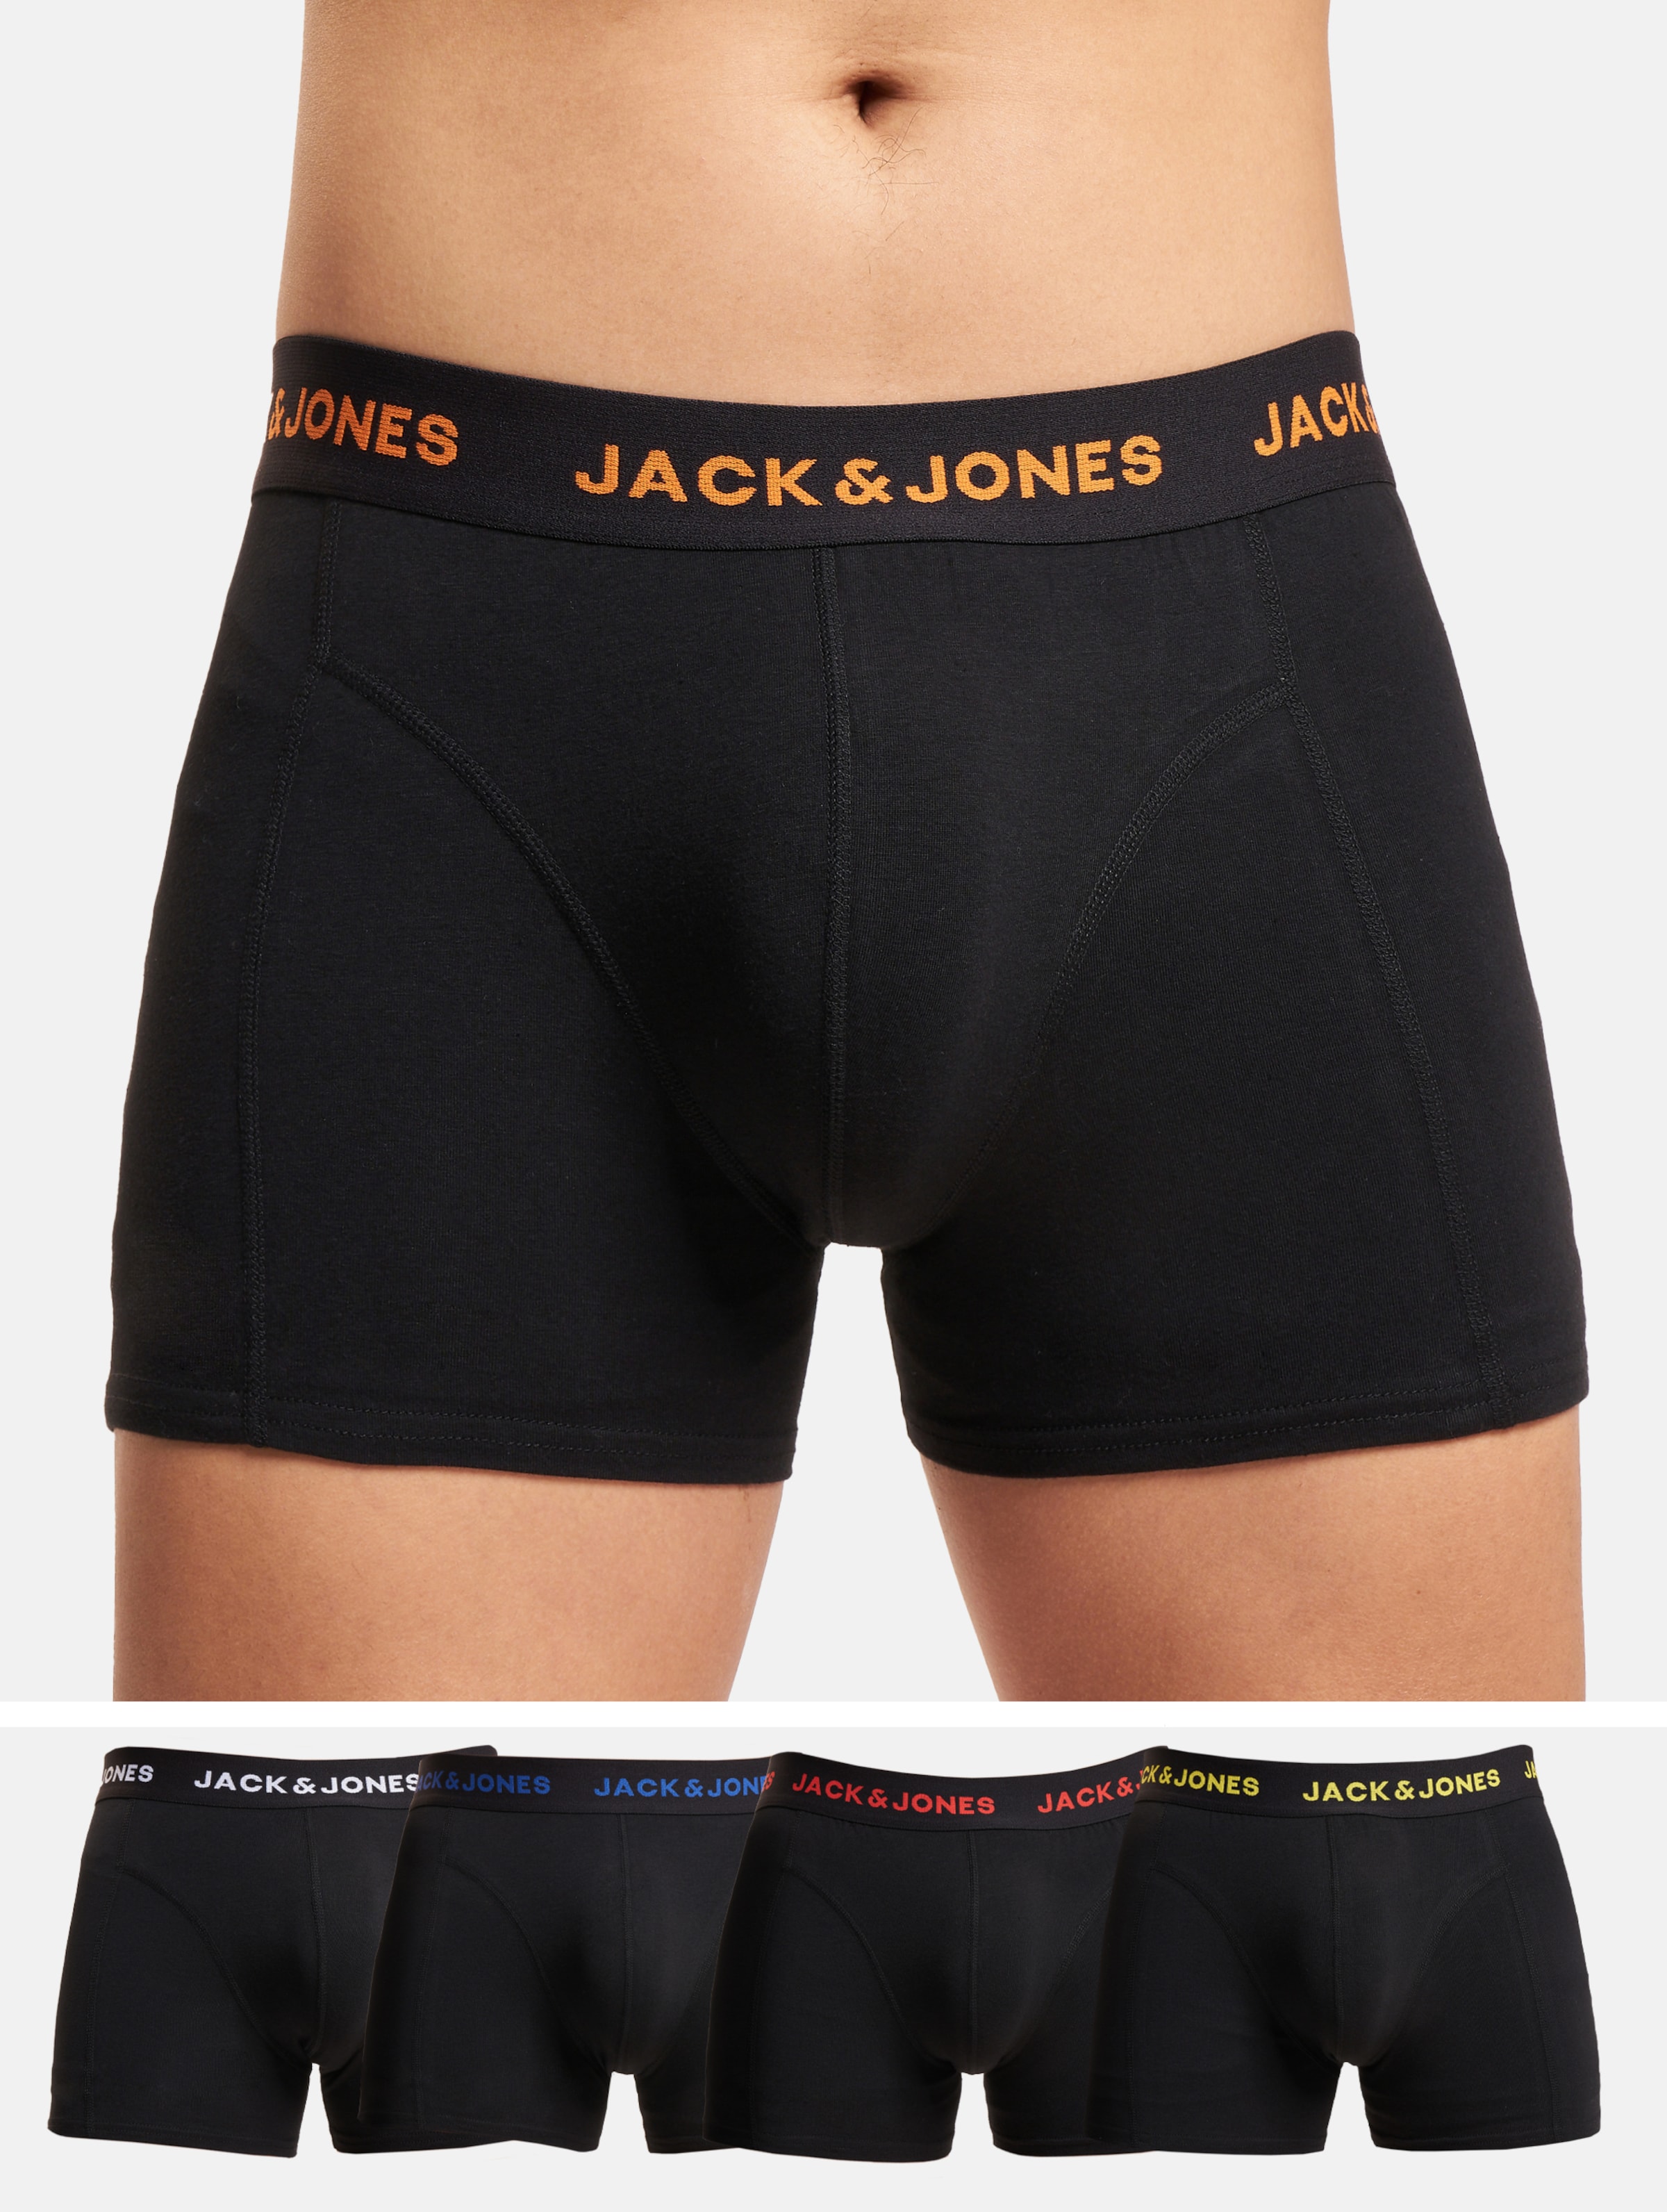 JACK&JONES JACBLACK FRIDAY TRUNKS 5 PACK BOX Heren Onderbroek - Maat M